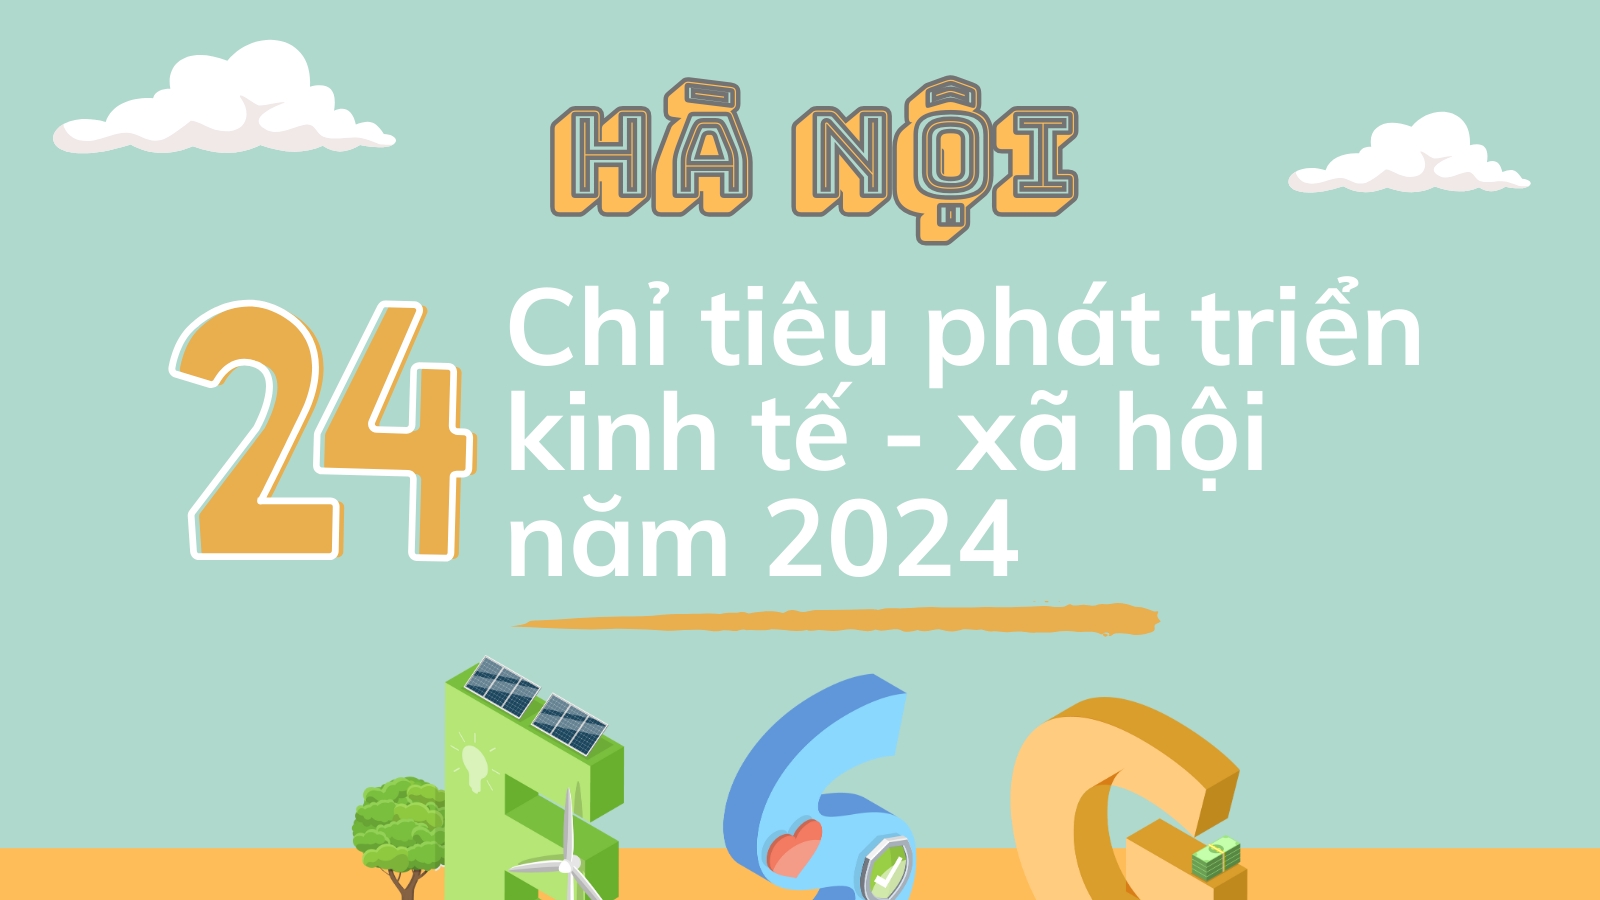 Chi tiết 24 chỉ tiêu phát triển kinh tế - xã hội của Hà Nội năm 2024